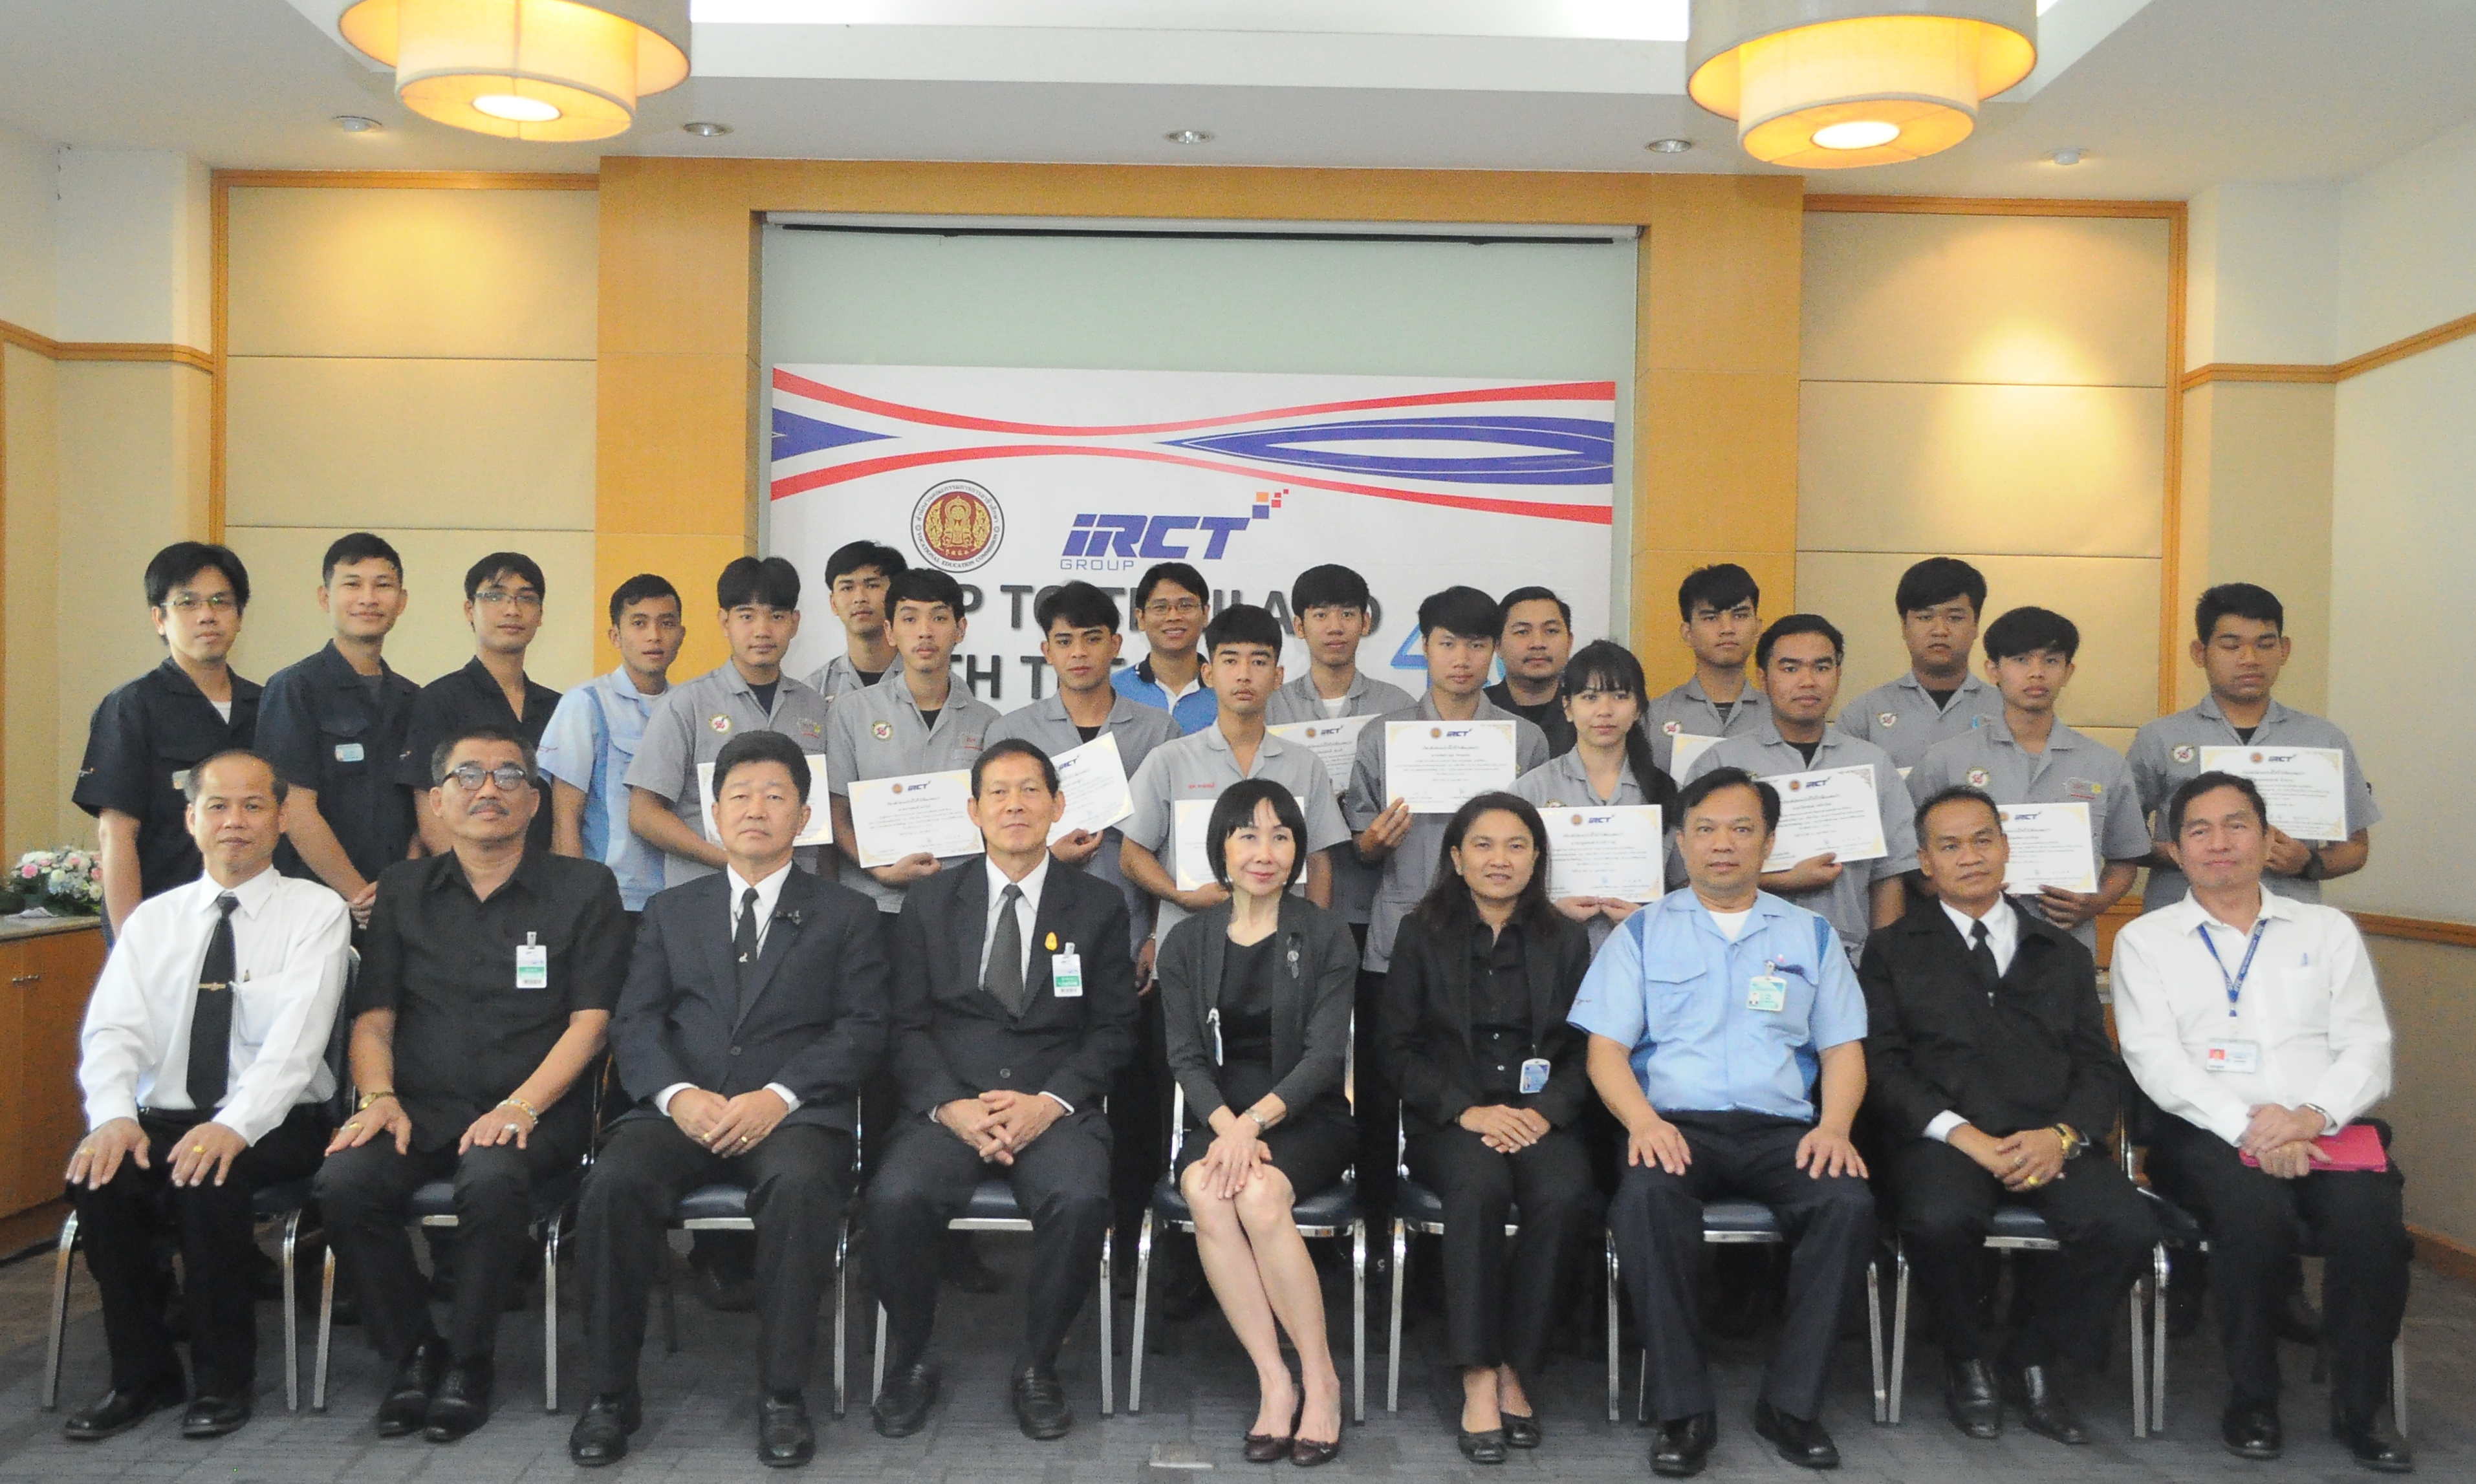 นักศึกษา IRCT ทวิภาคีโชว์ฝีมือ งาน “IRCT Group Step to Thailand 4.0 with the DVE”